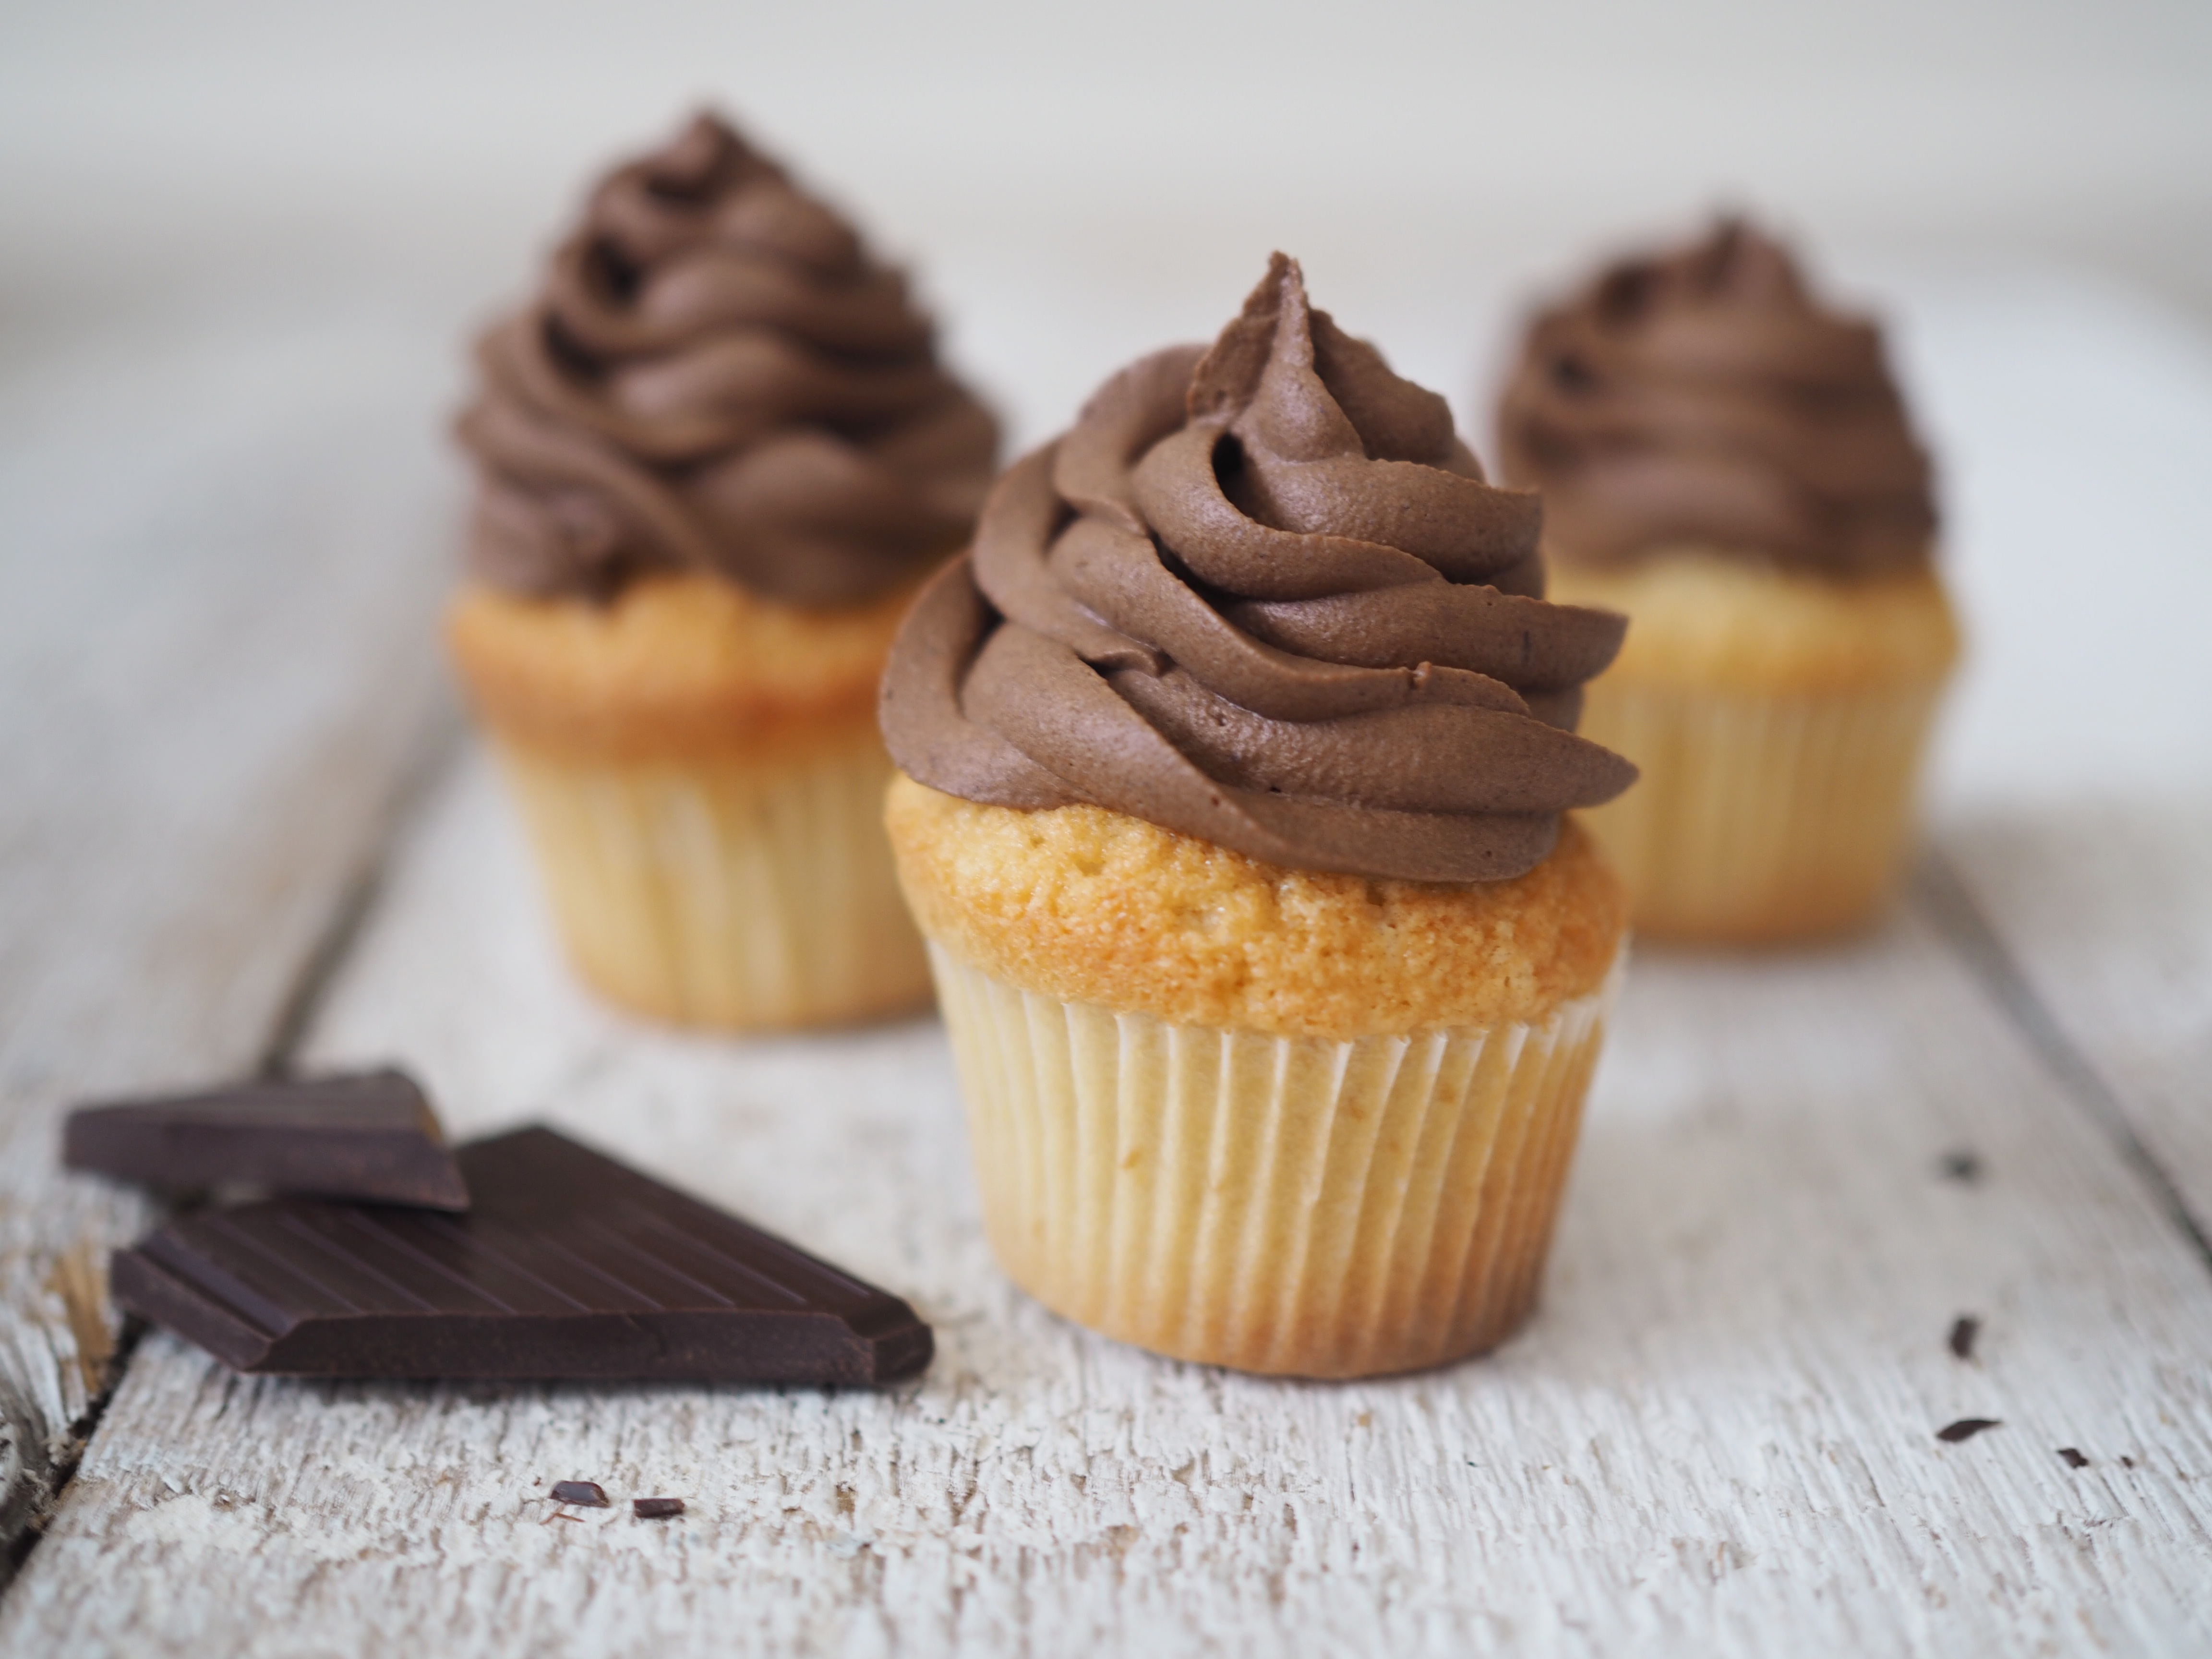 Vanilkové cupcakes s čokoládovým krémem